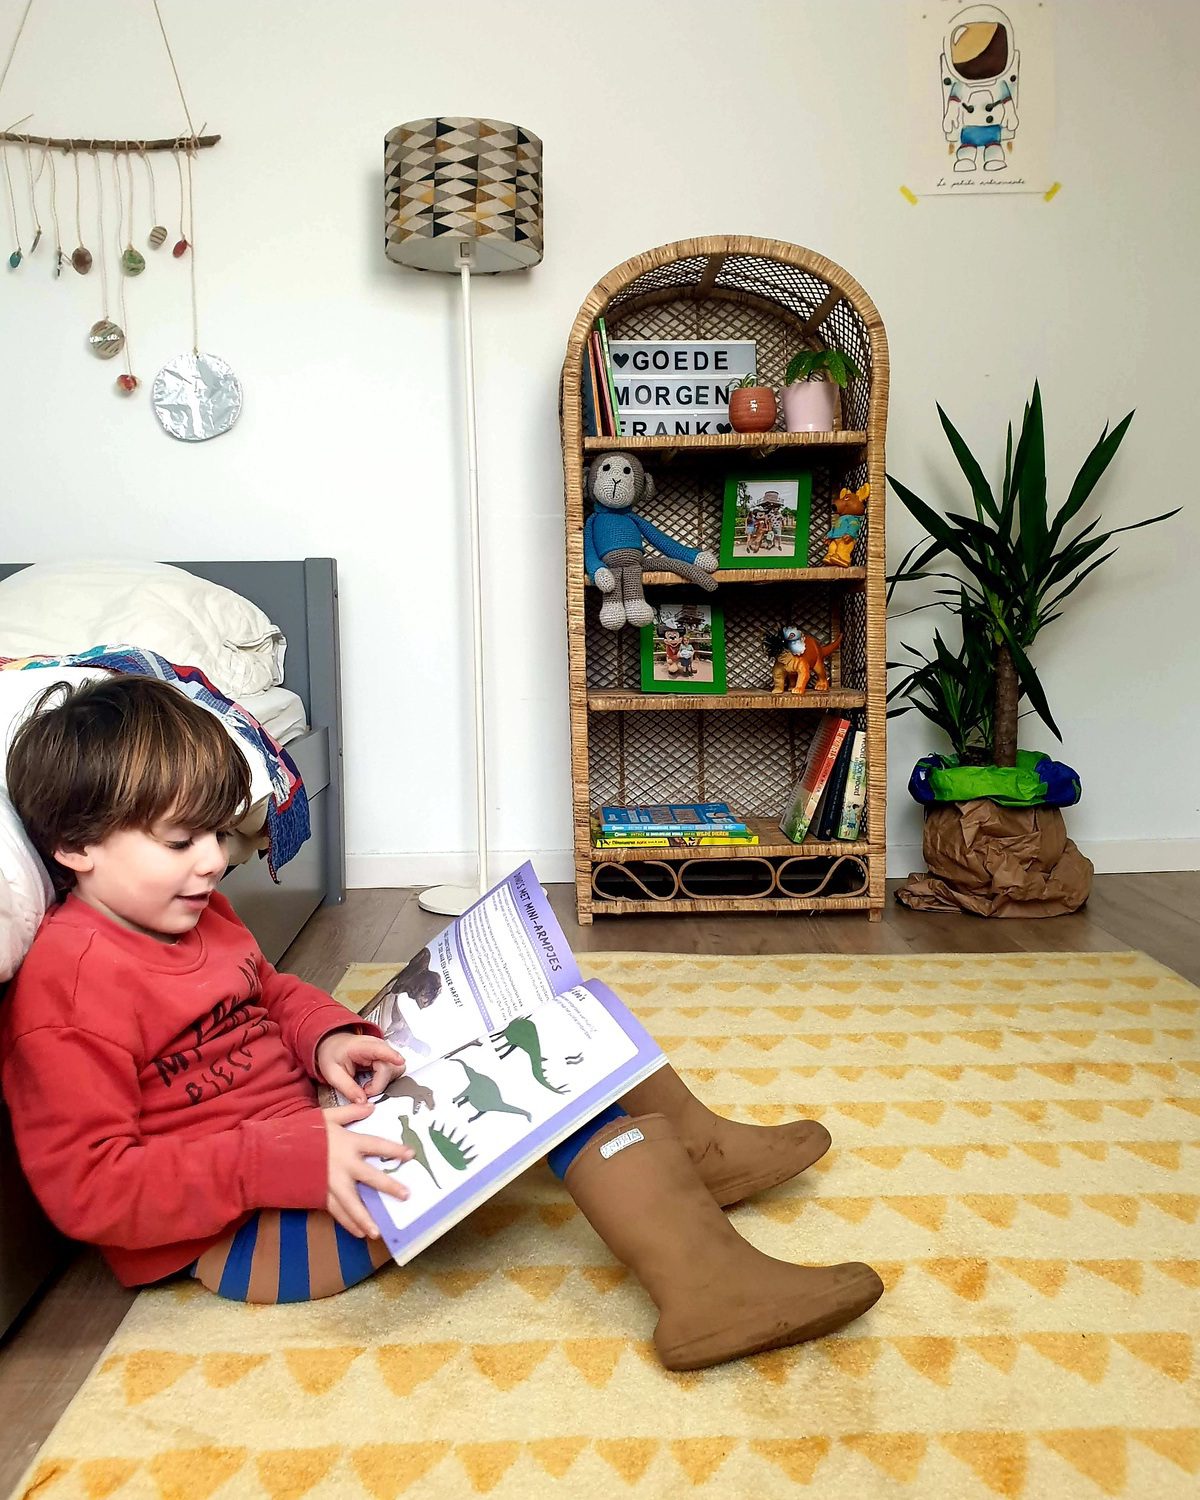 Kinderkamer inspiratie met veel tweedehands kinderboeken.